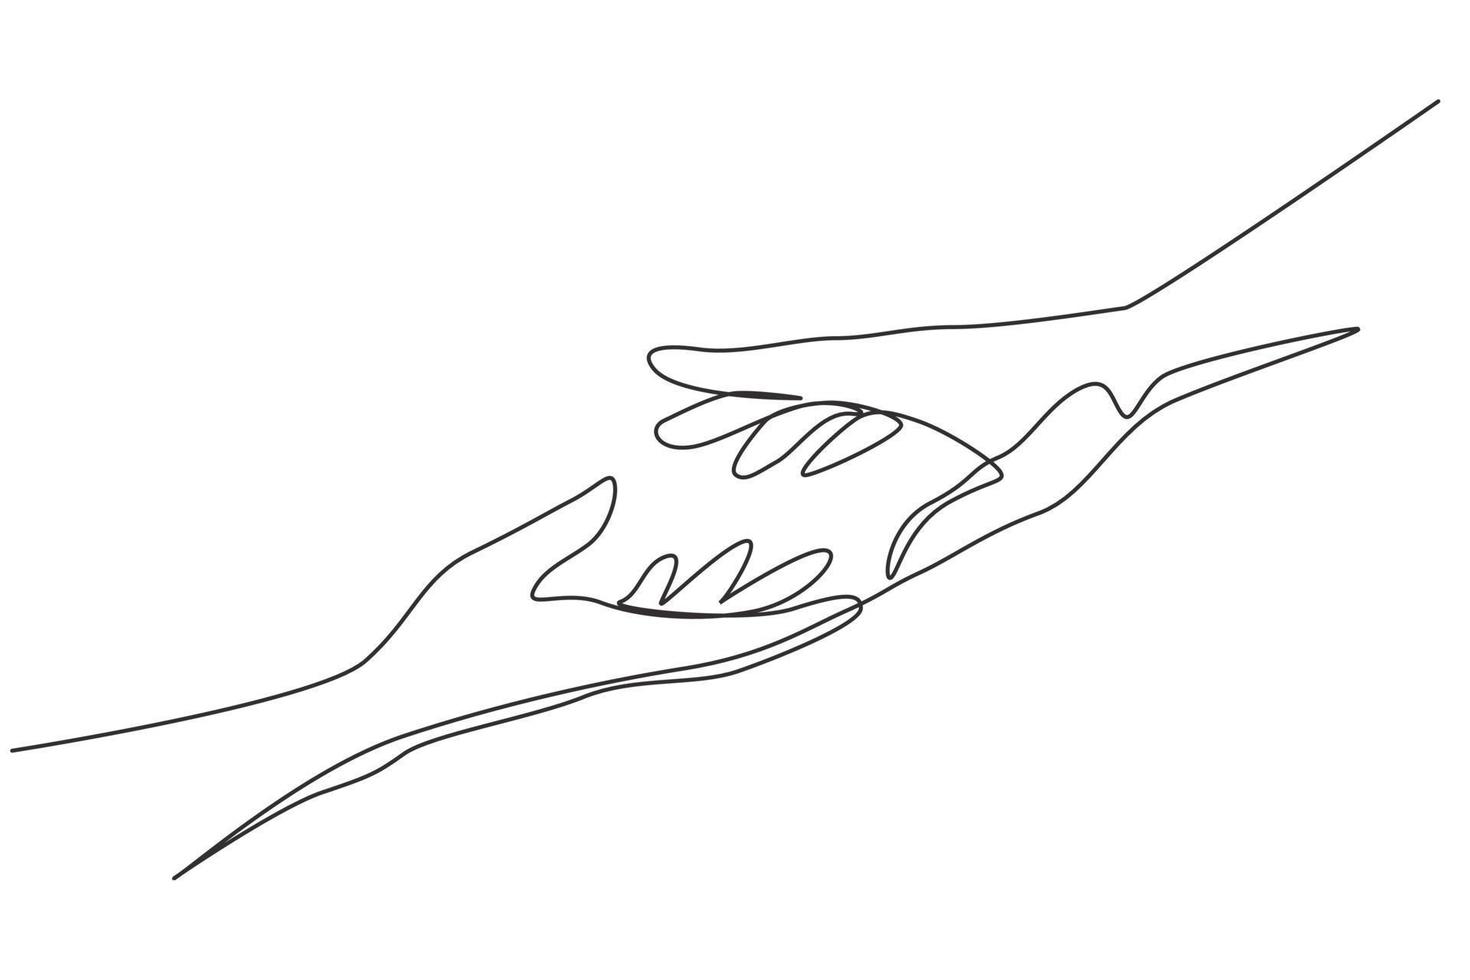 une ligne continue dessinant deux mains qui se tendent l'une vers l'autre. signe ou symbole d'amour, d'espoir, d'attention, d'aide. Communication avec les gestes de la main dessiner une seule ligne design illustration graphique vectorielle vecteur